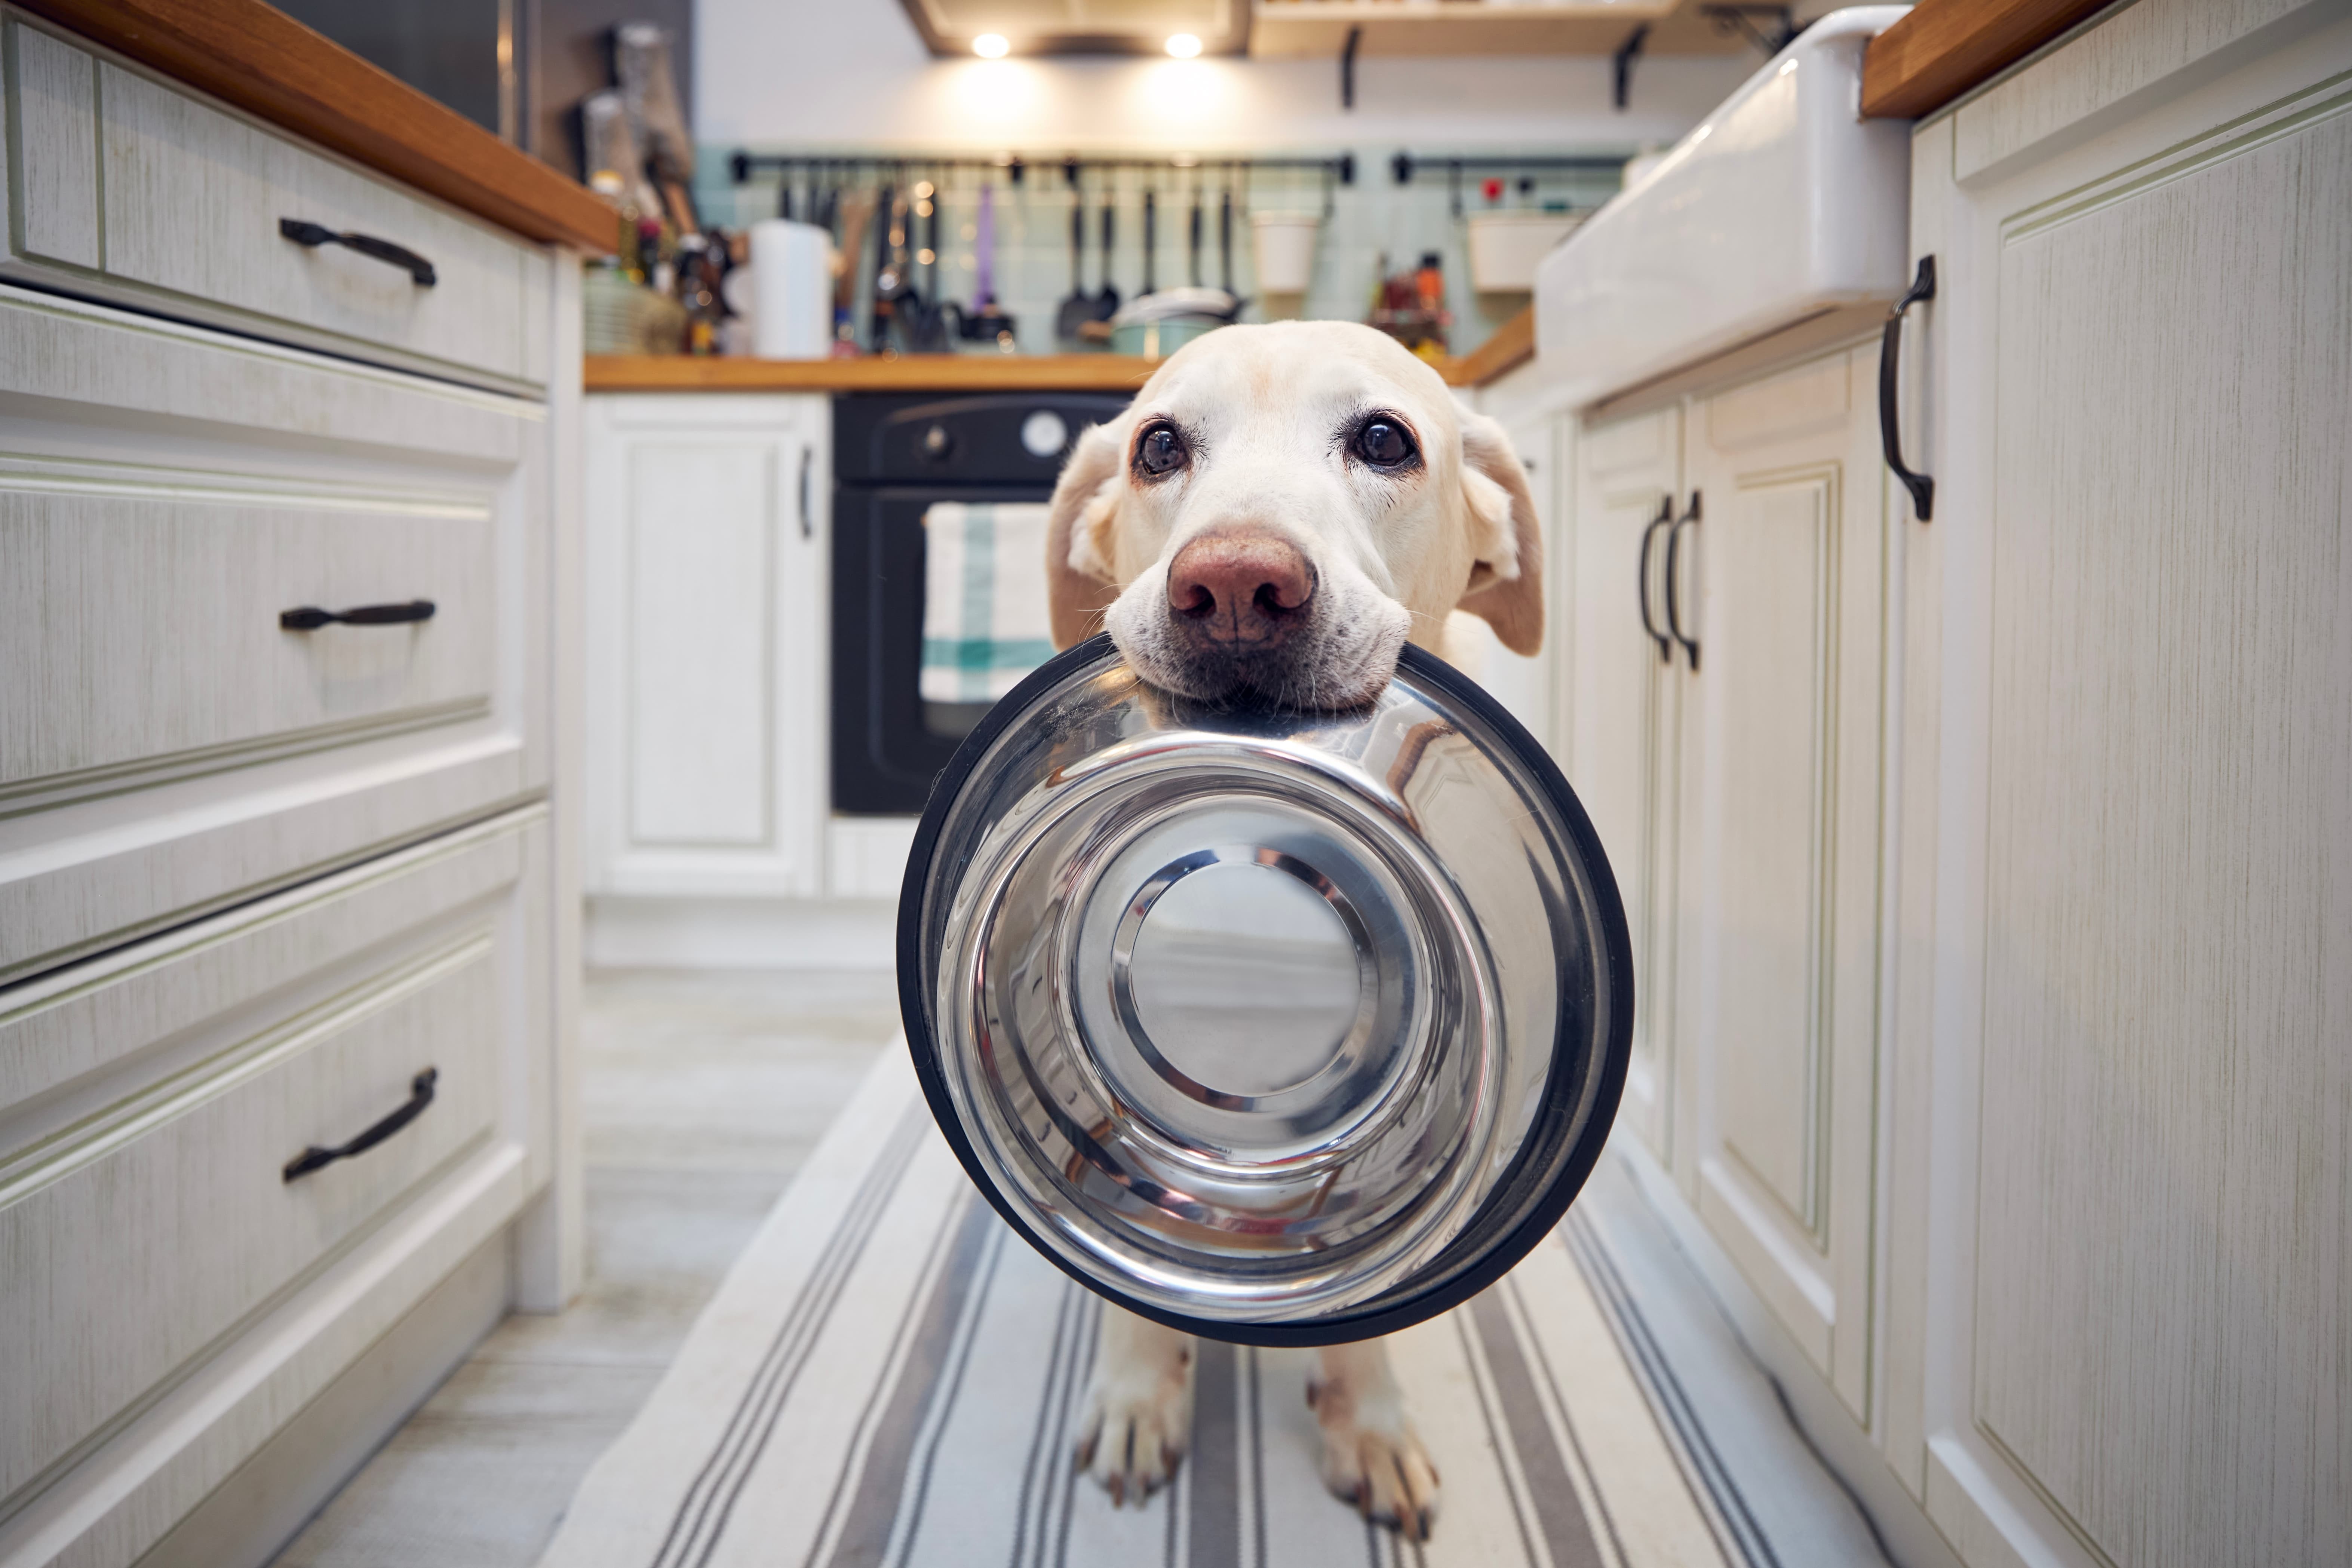 Imagem de um labrador branco em pé segurando uma vasilha de ração de alumínio na boca, entre armários brancos da cozinha, com um fogão e utensílios sobre a bancada ao fundo.